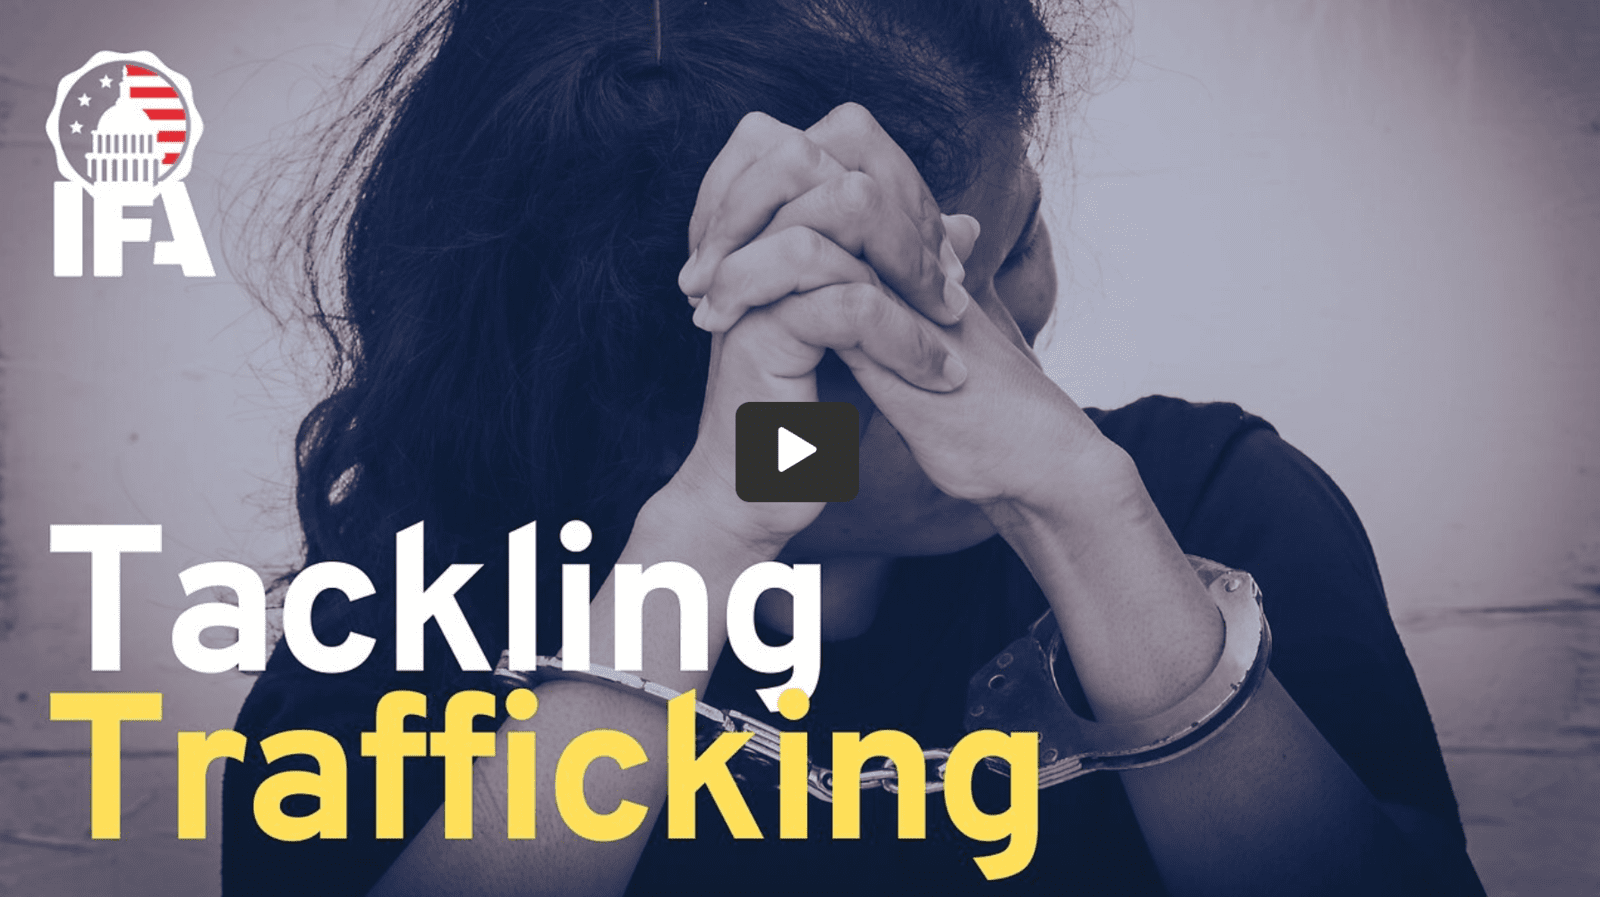 Tackling Trafficking